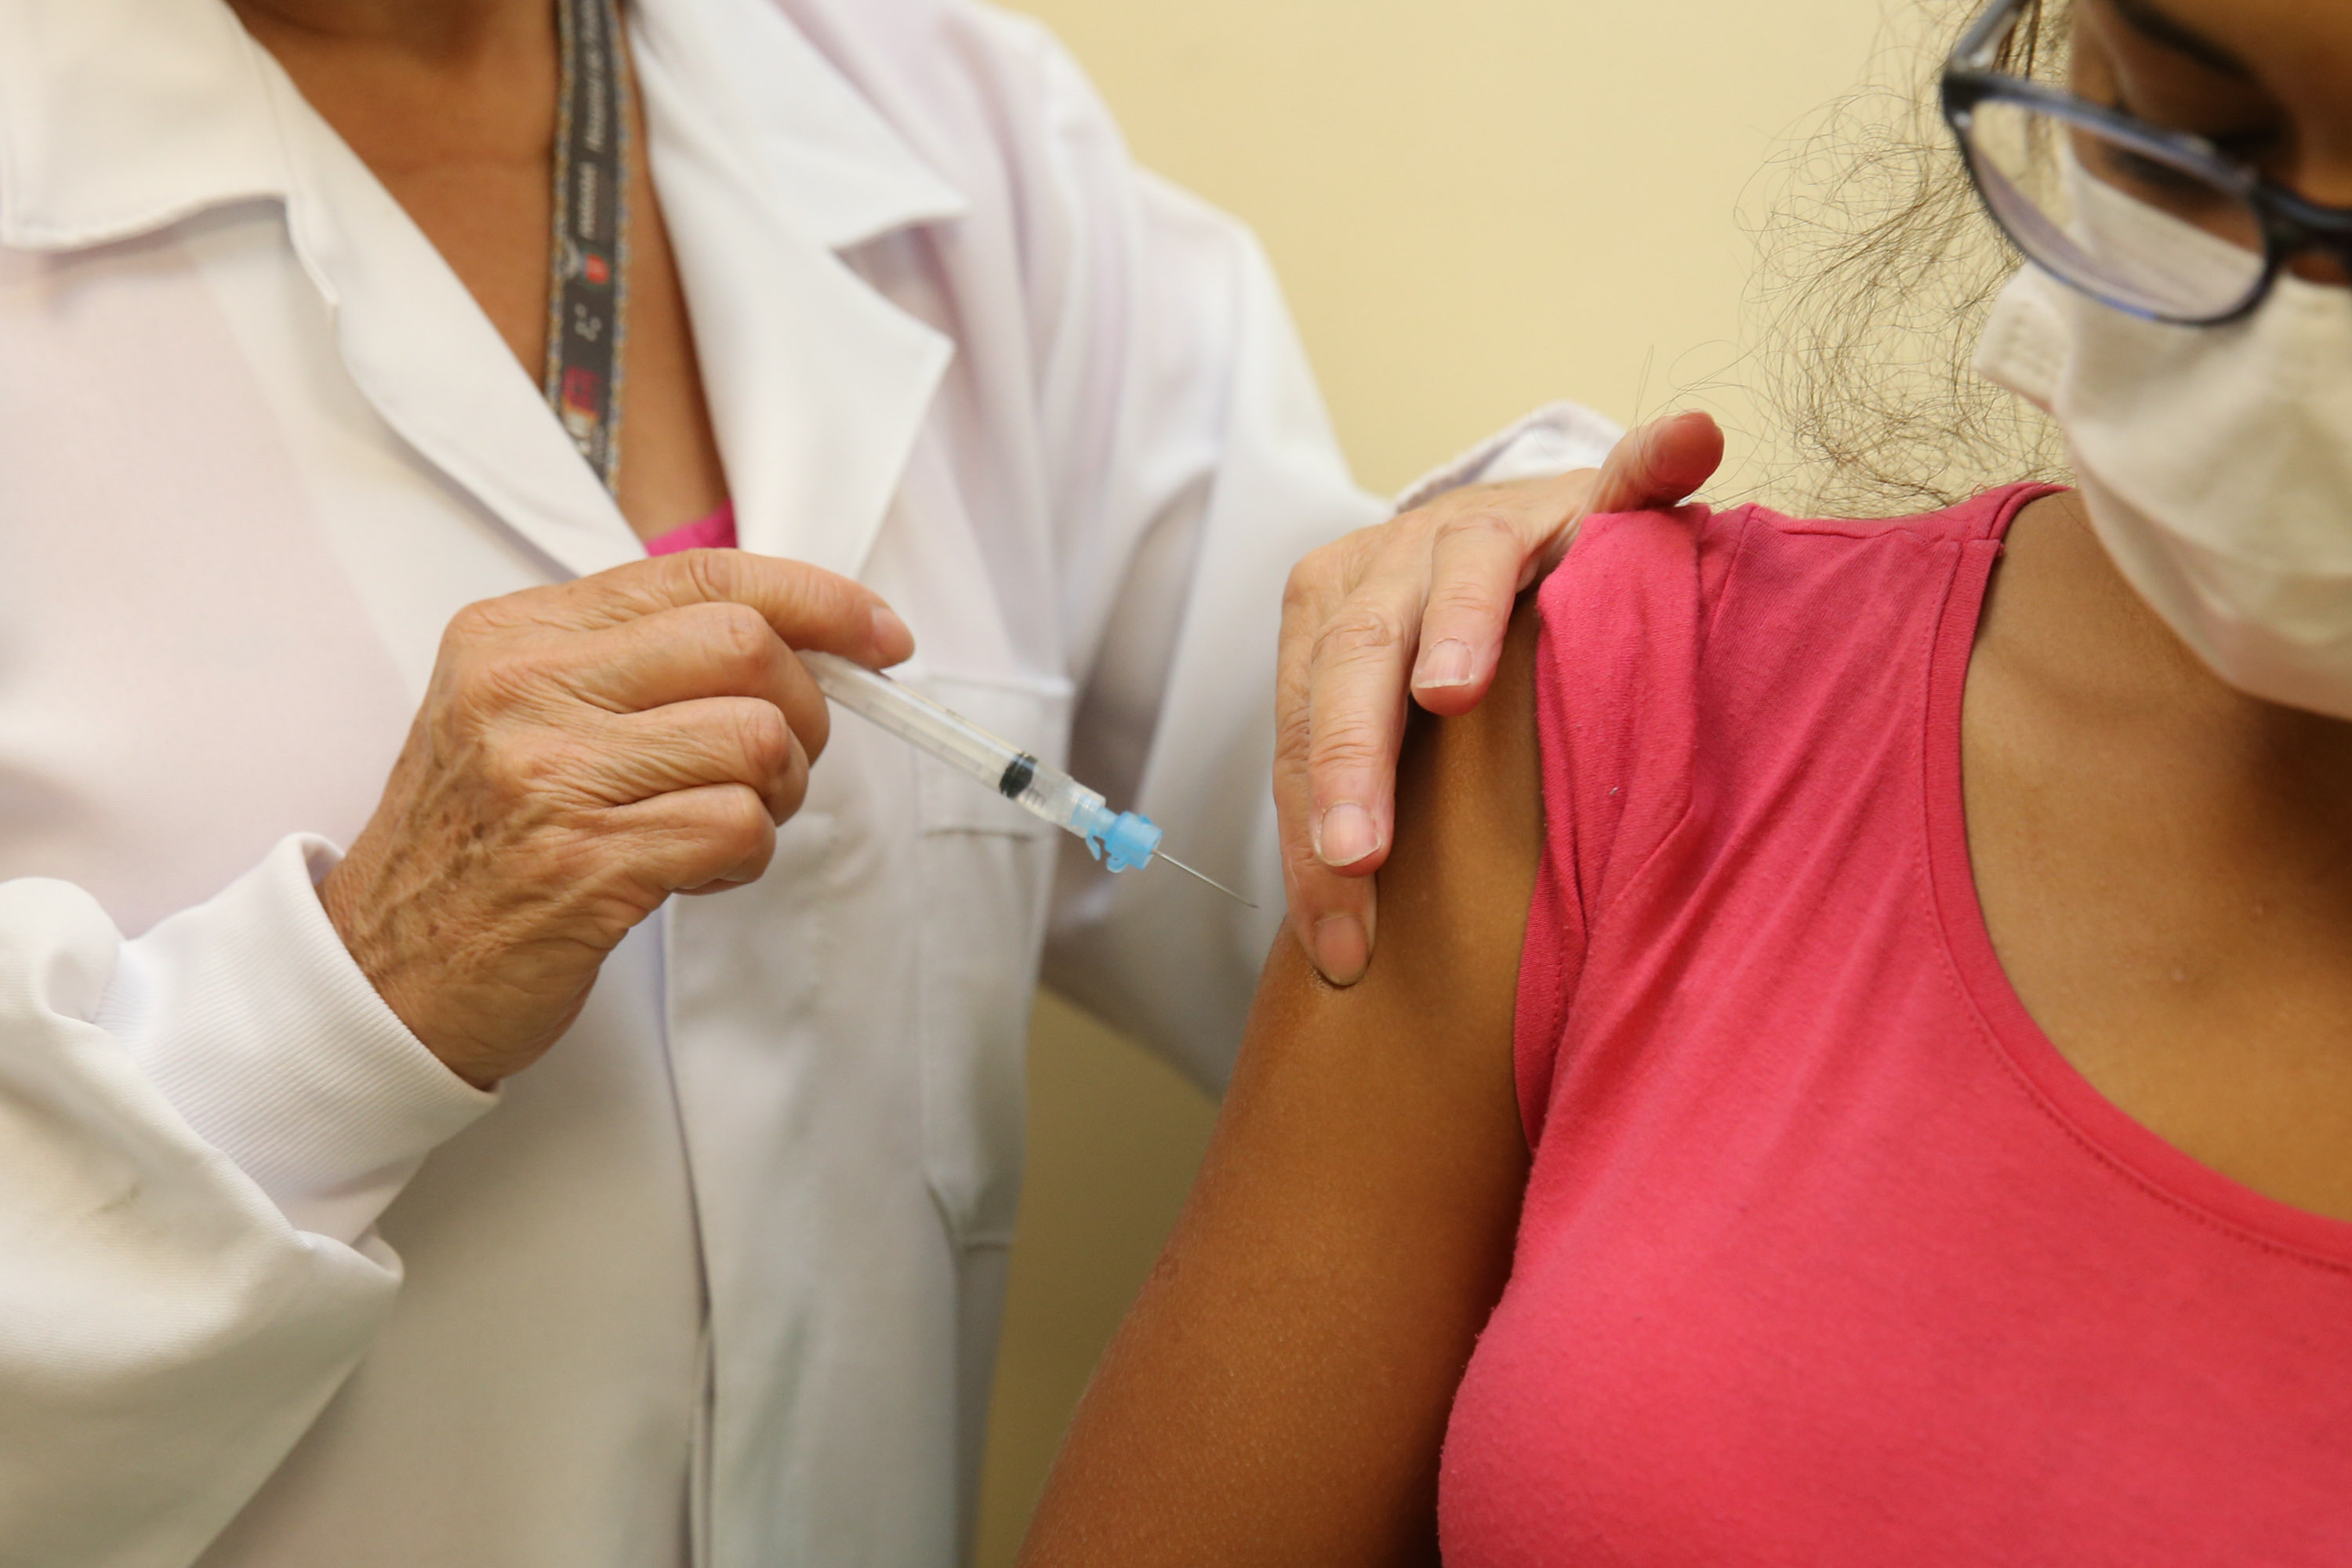 Paraná lidera ranking de perdas de vacinas contra o Covid-19 no Brasil —  Paraná